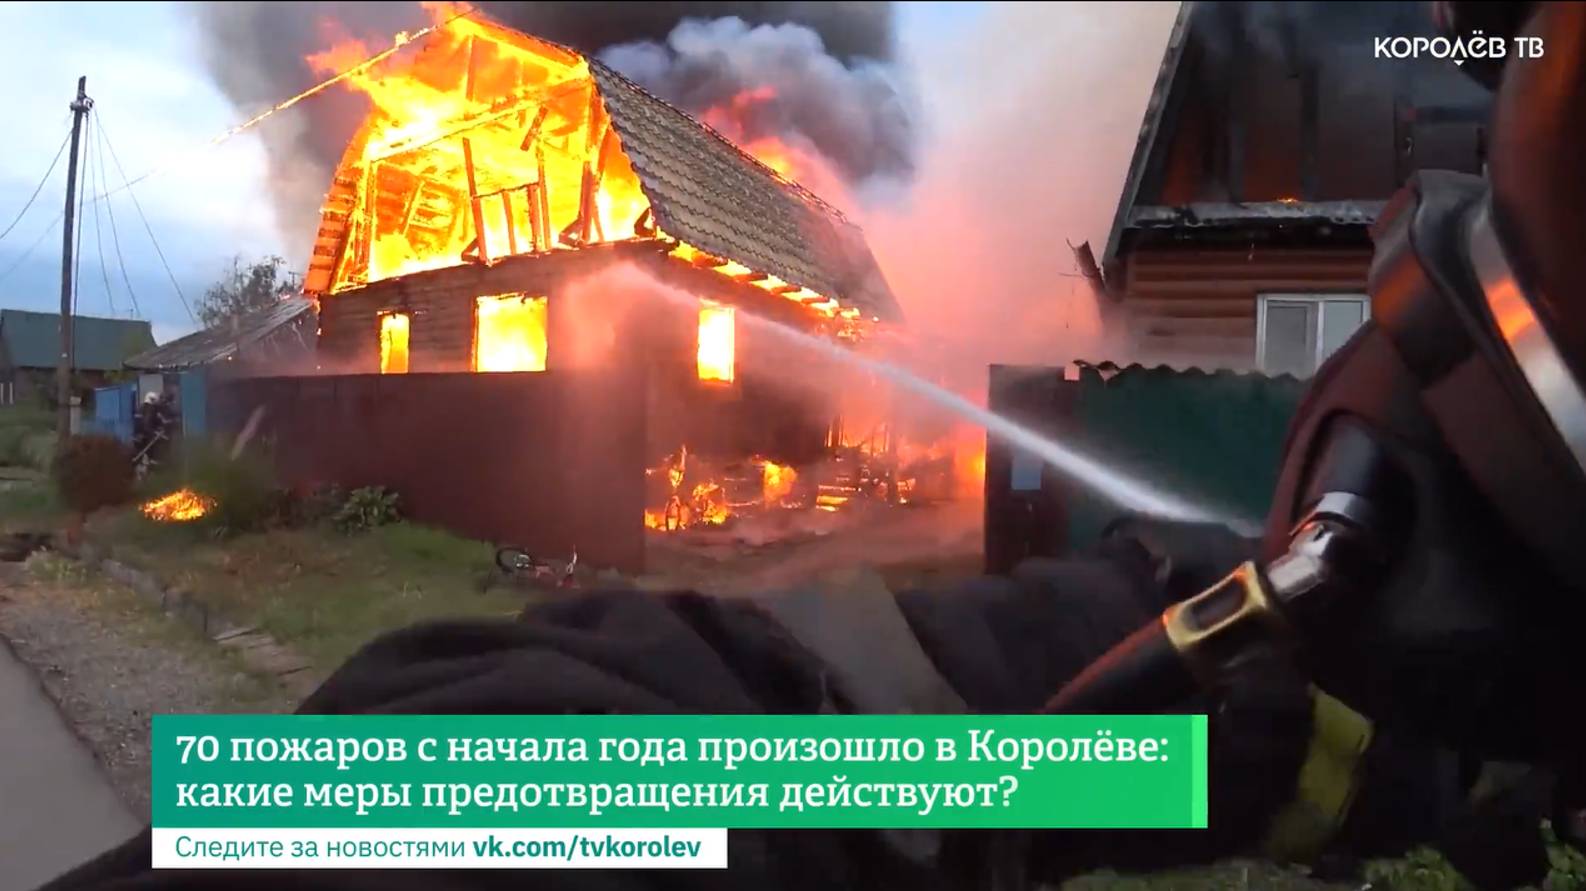 70 пожаров с начала года произошло в Королёве: какие меры предотвращения действуют?